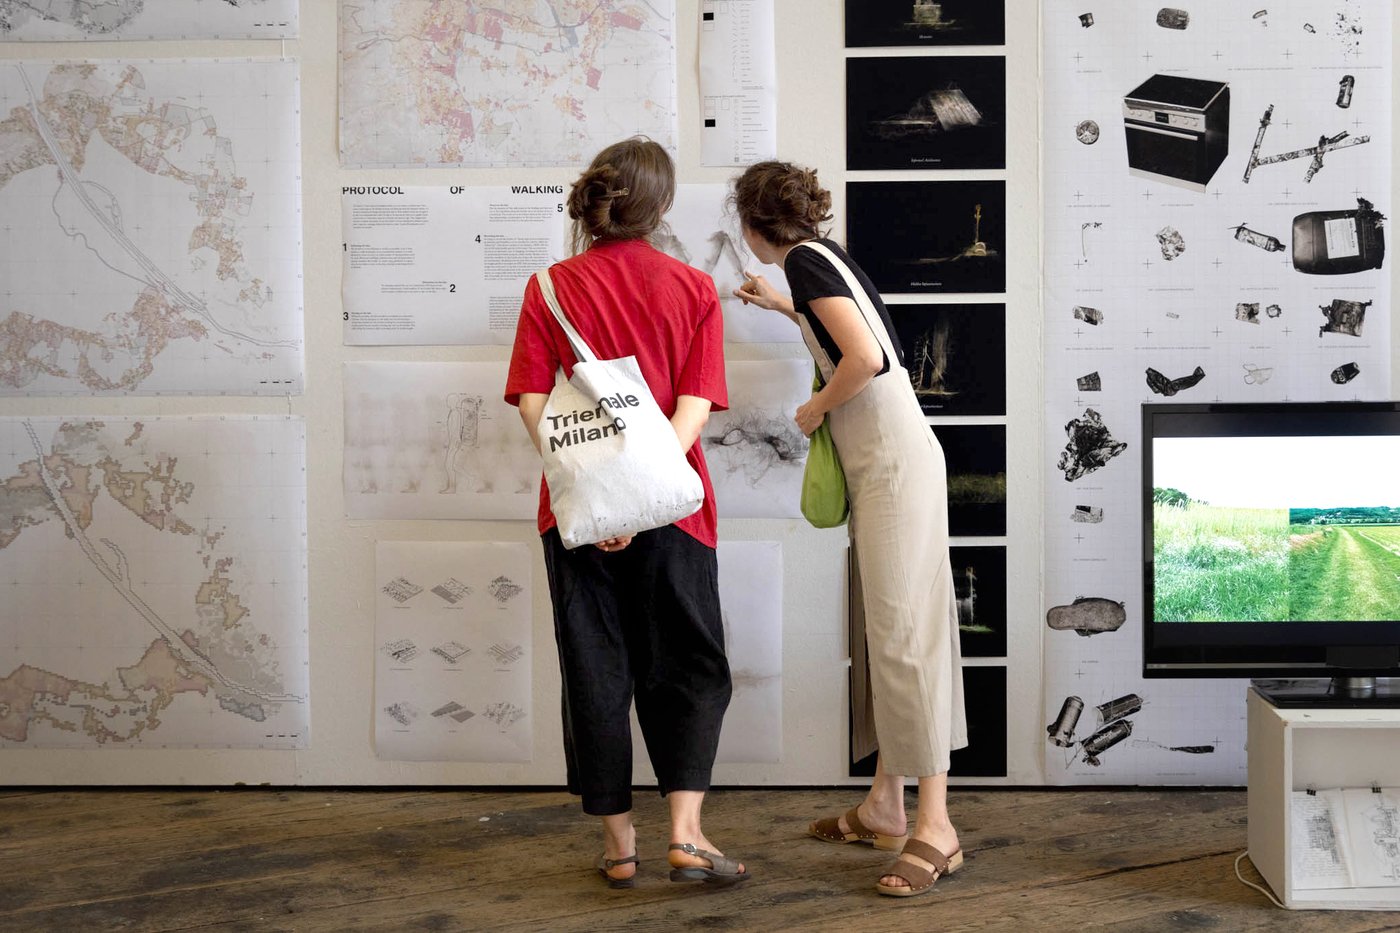 Personen vor einer Ausstellungswand betrachten Architekturzeichnungen